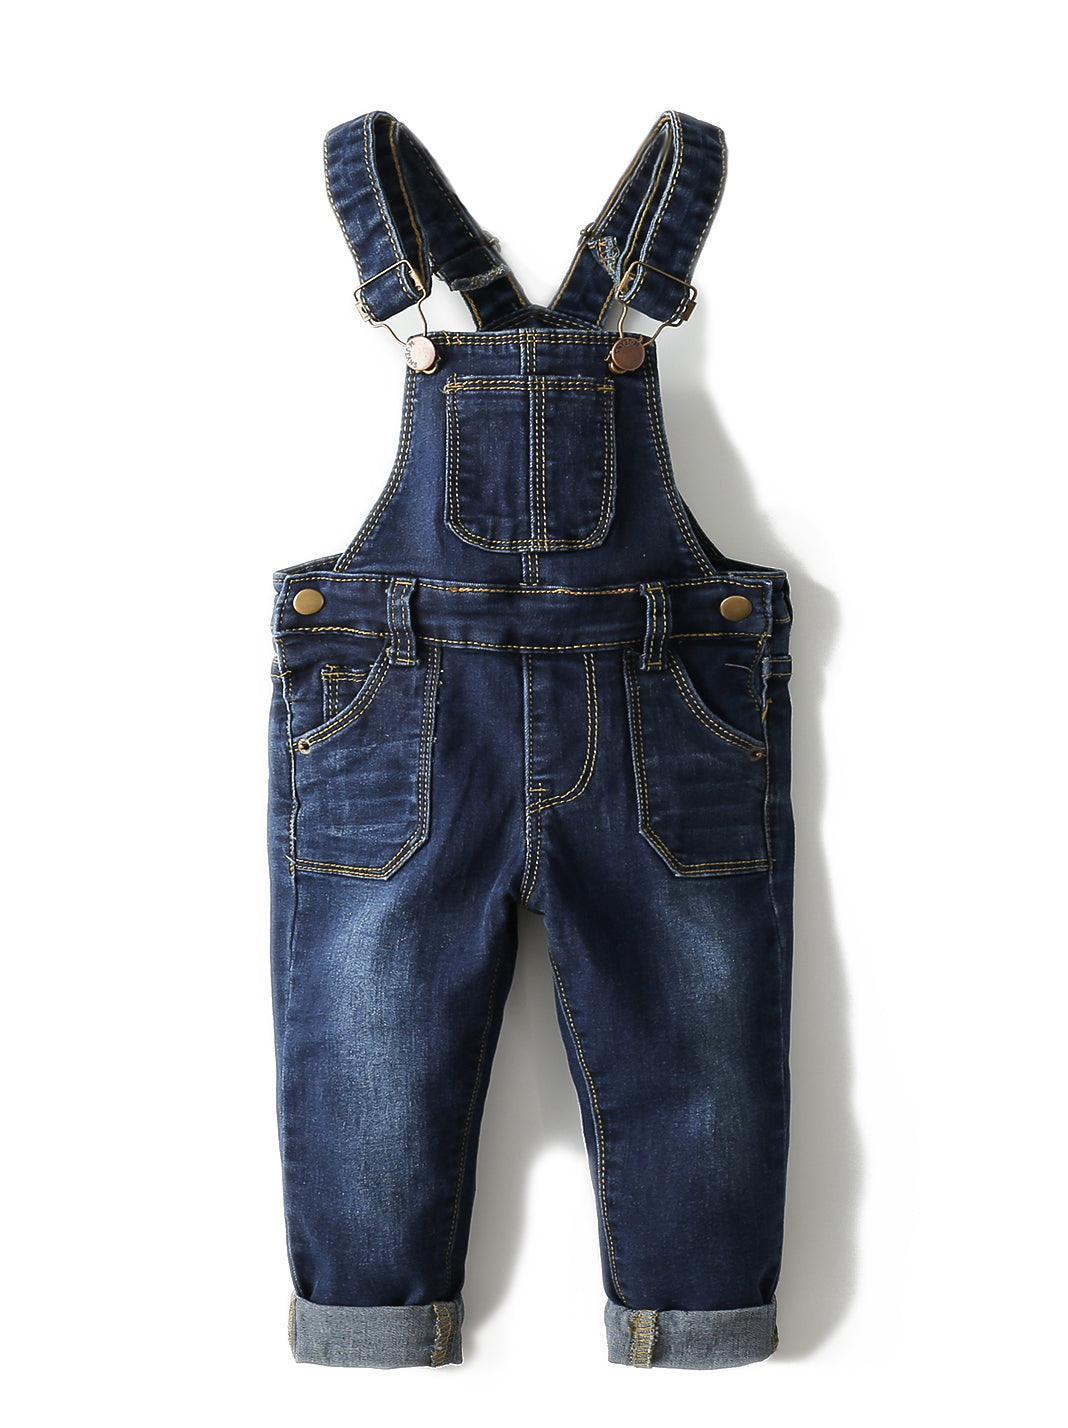 Toddler Adjustable Strap Blue Washed Jeans Overalls